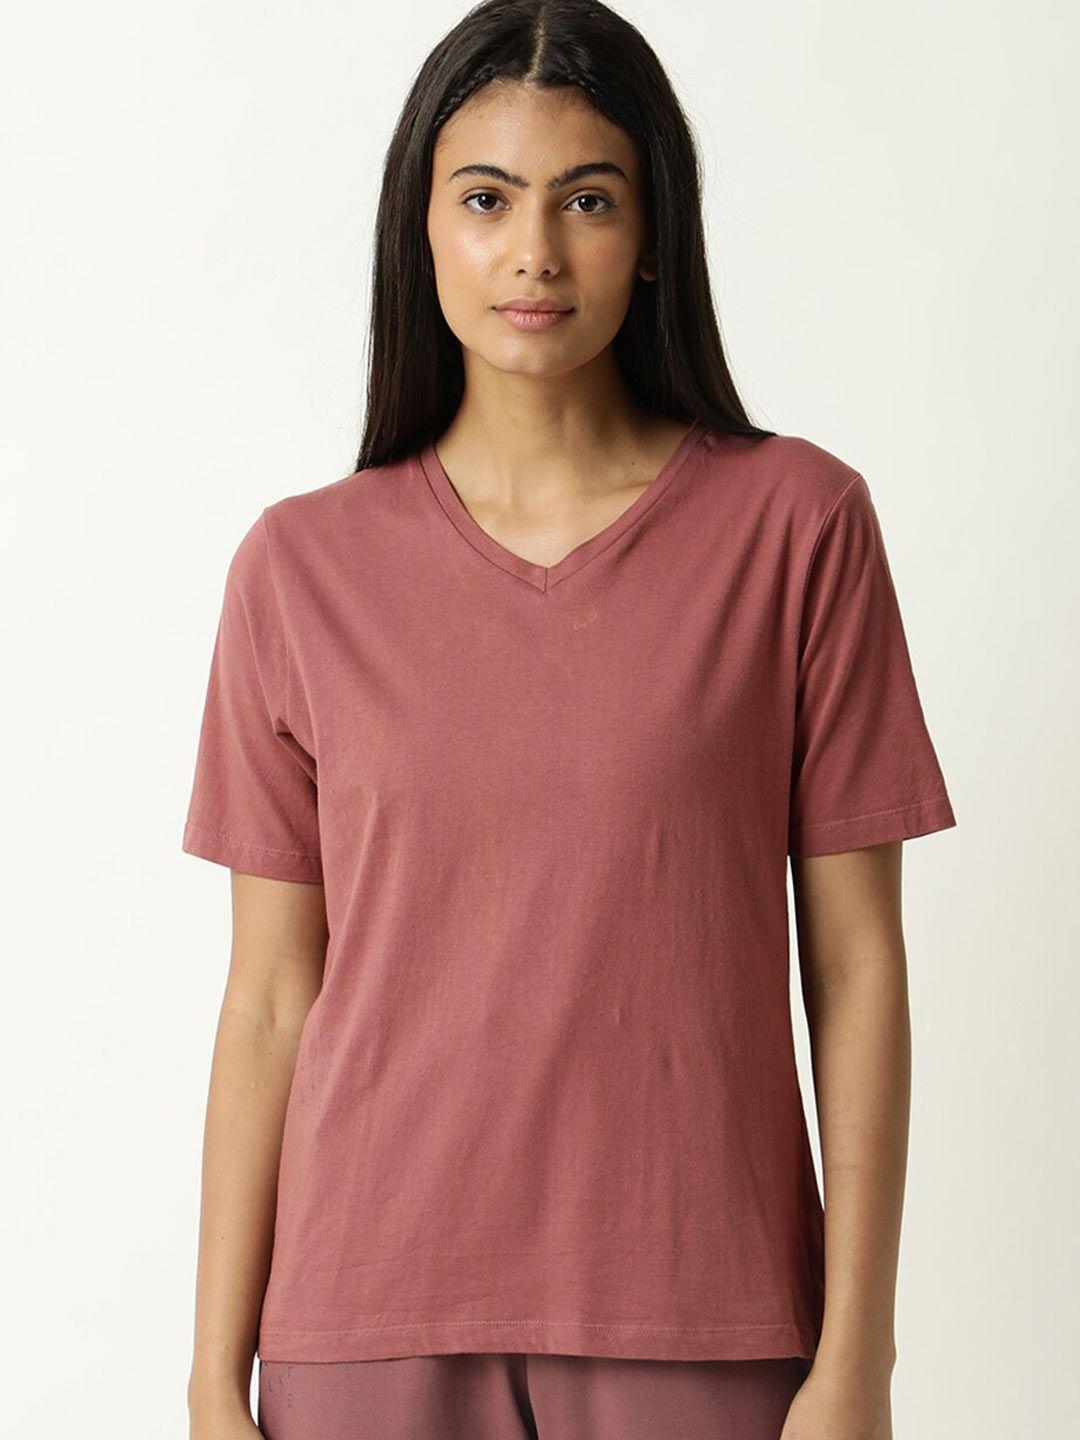 articale women mauve solid v-neck  slim fit cotton t-shirt